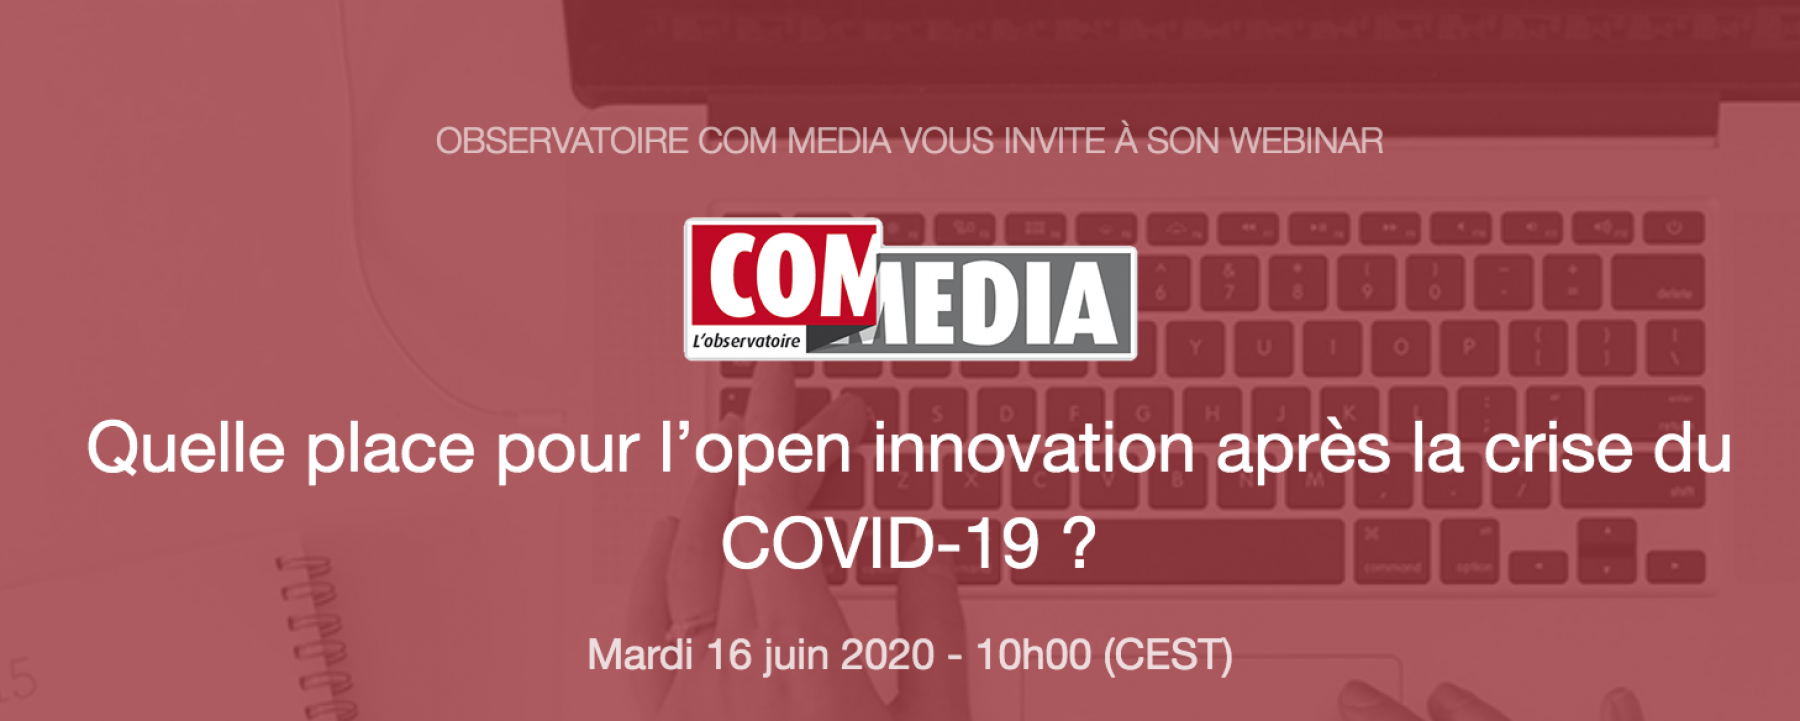 Webinar Quelle place pour l'open innovation après la crise du COVID-19 ?, le 16 juin 2020, organisé par l'Observatoire COM MEDIA